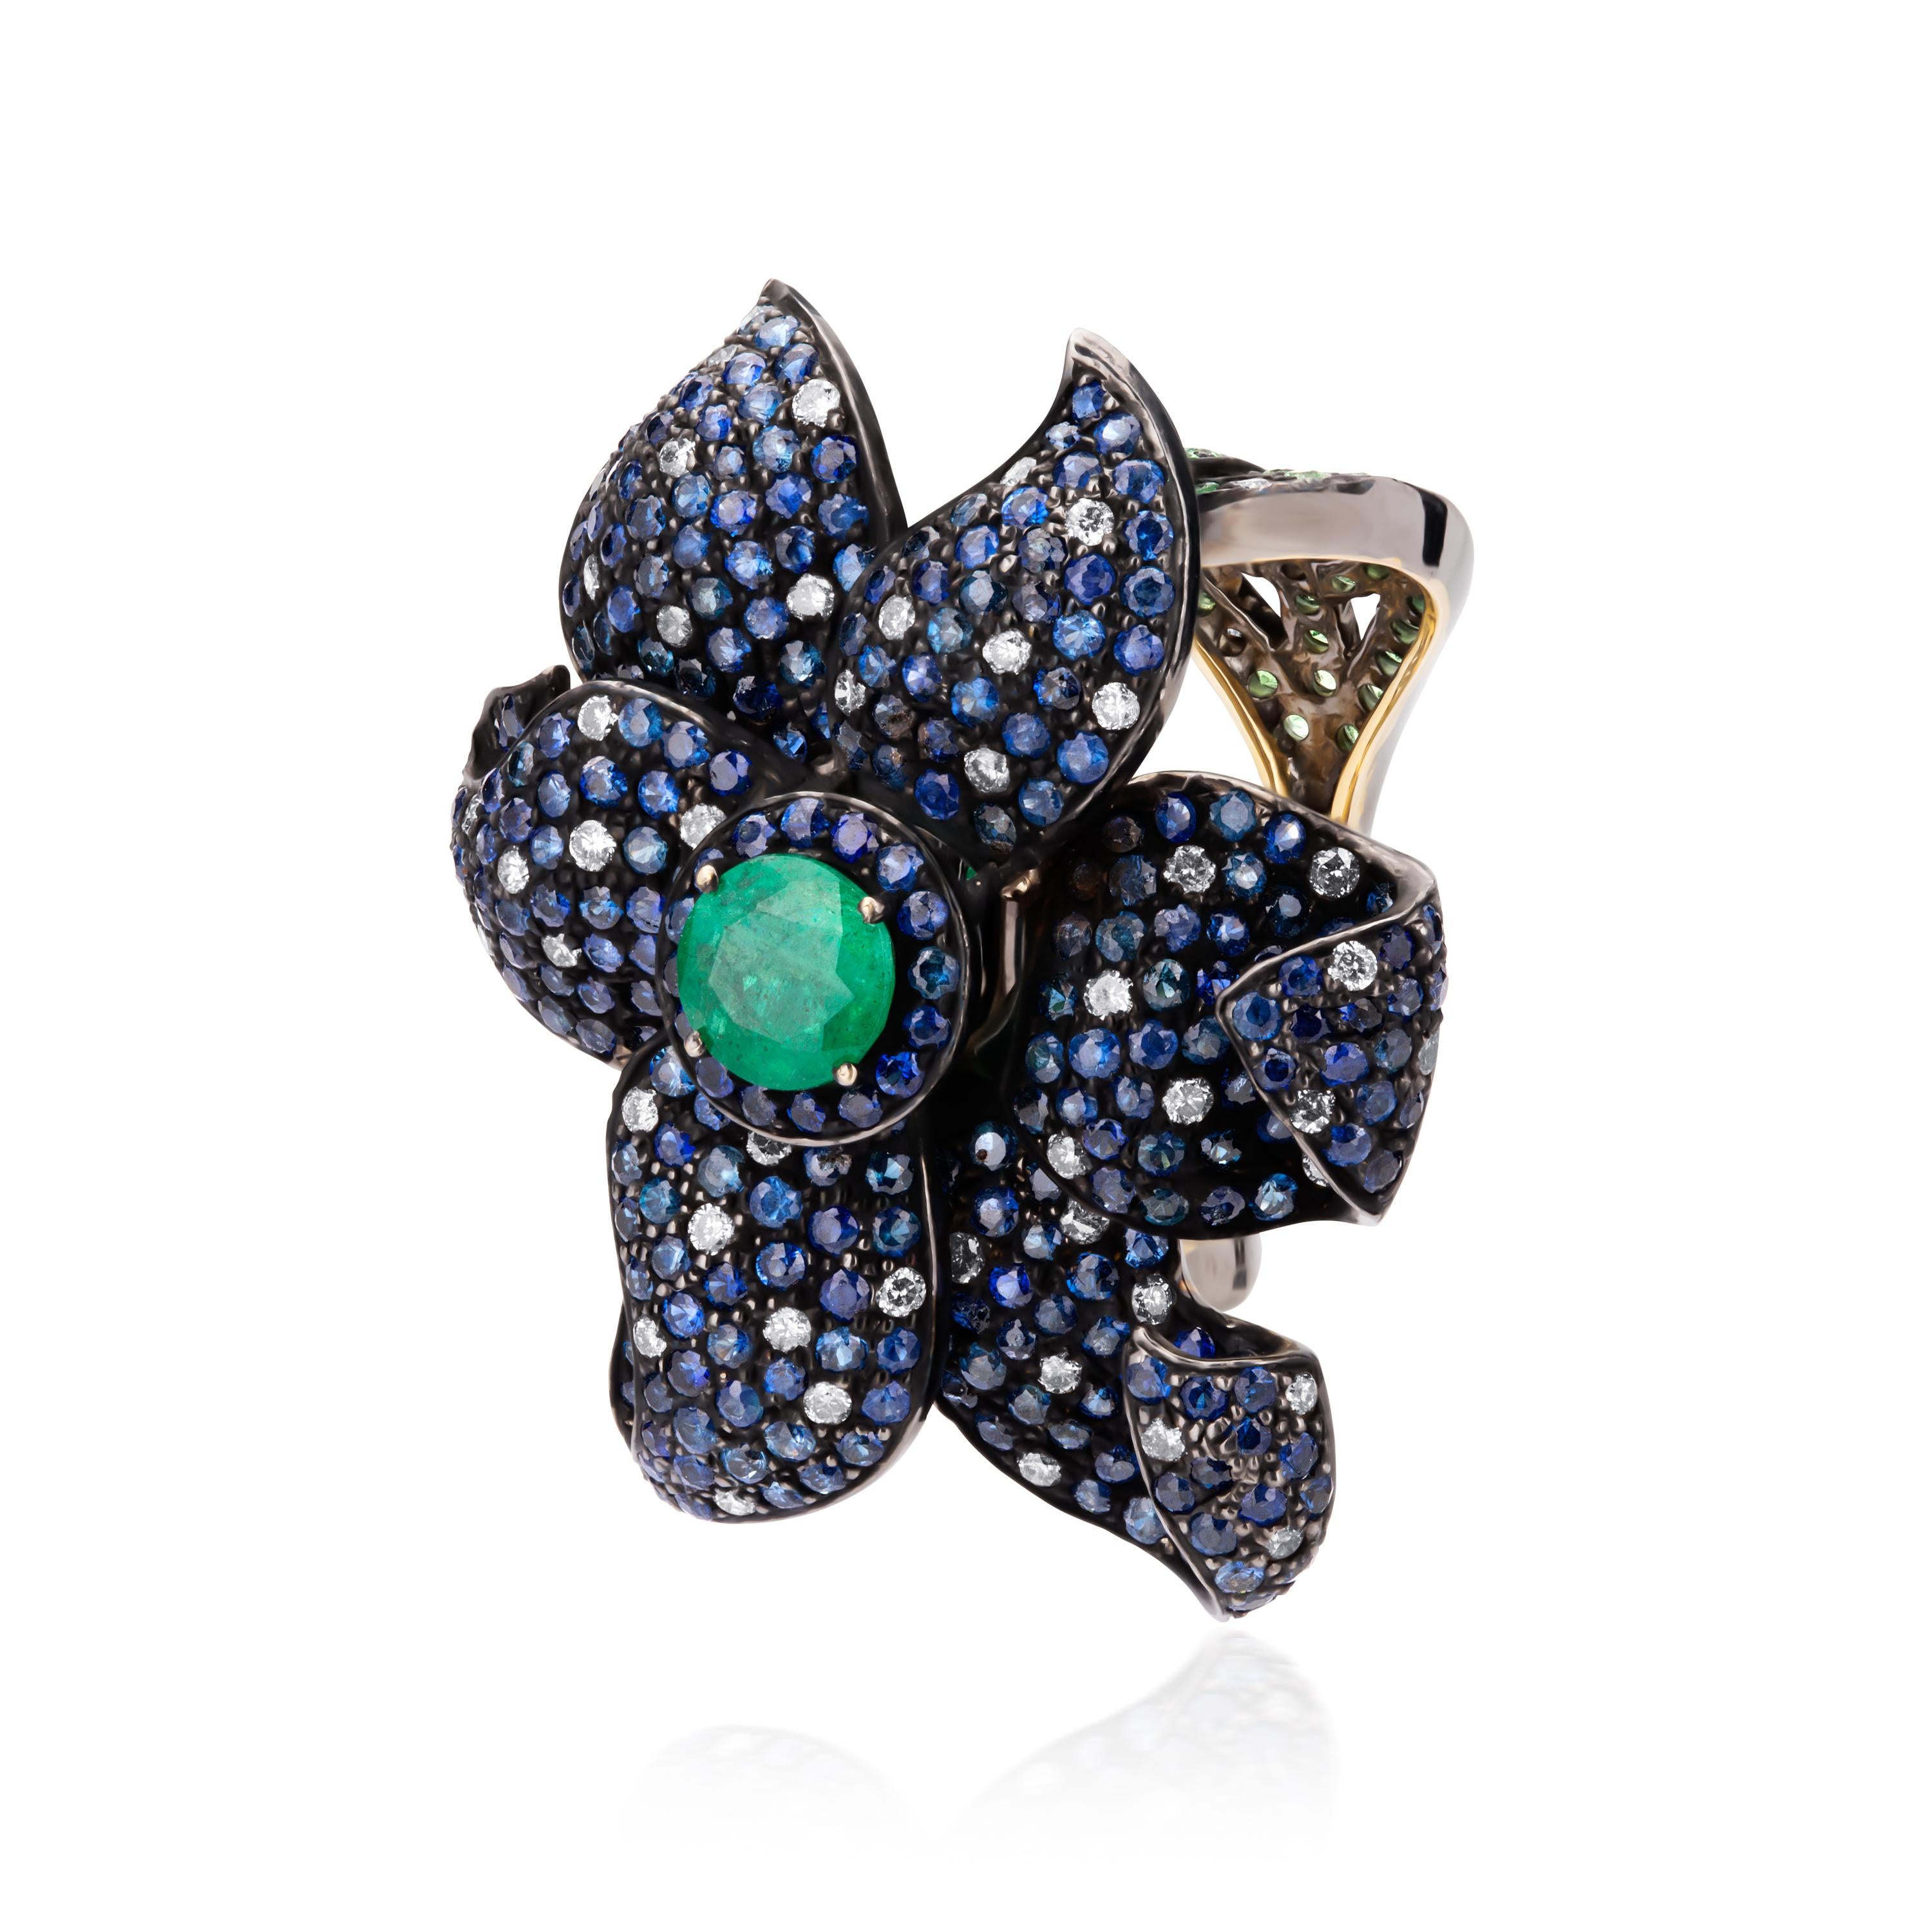 Eine klassische viktorianische Blume! Dieser extravagante Ring zeigt einen runden, facettierten Smaragd in der Mitte einer Blume, die mit funkelnden blauen Saphiren besetzt ist. Die zentrale Blüte wird durch zwei Bänder mit Blattmotiven akzentuiert,